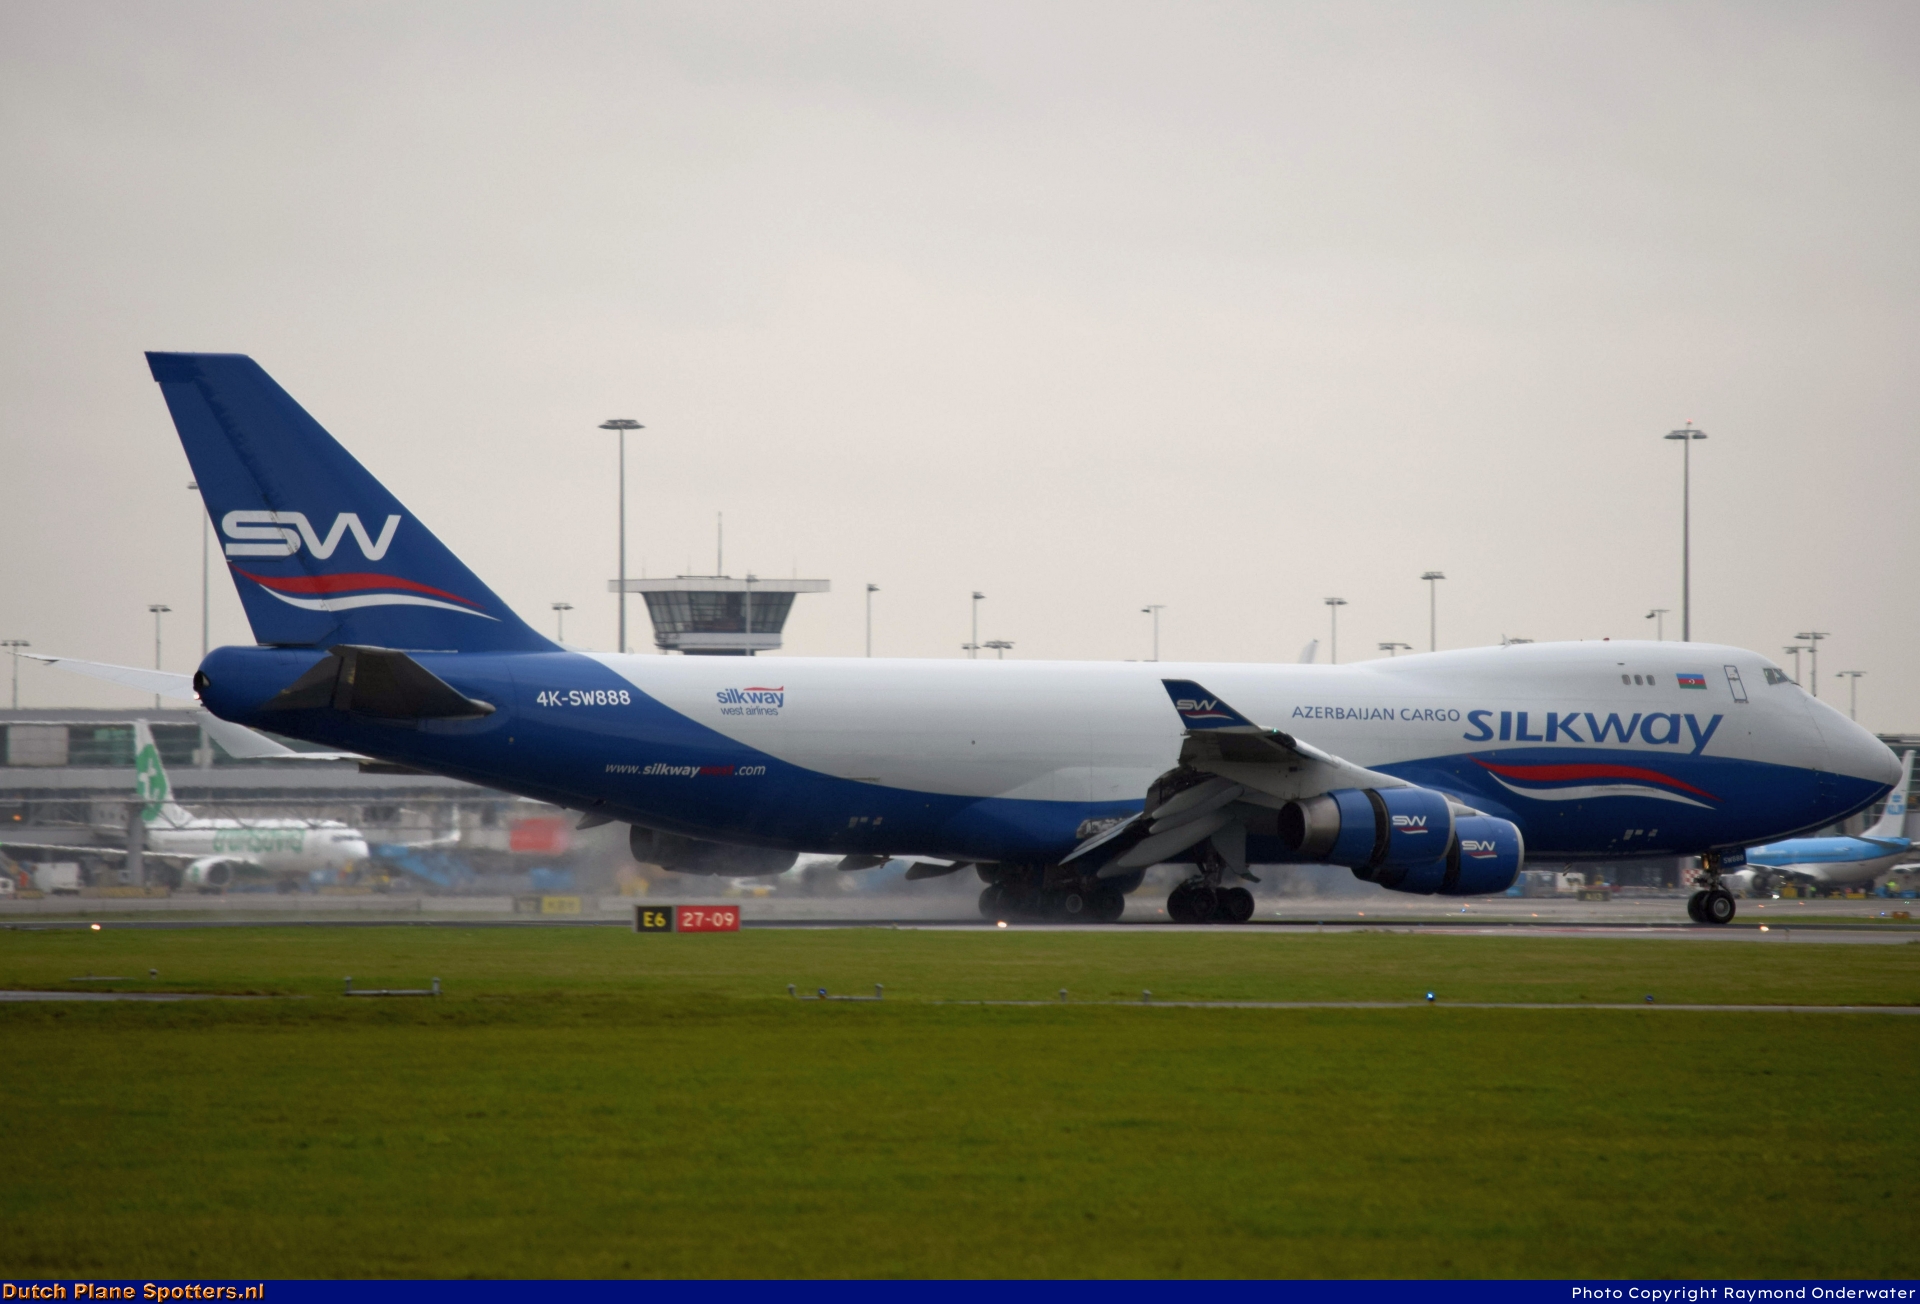 4K-SW888 Boeing 747-400 Silk Way Airlines by Raymond Onderwater